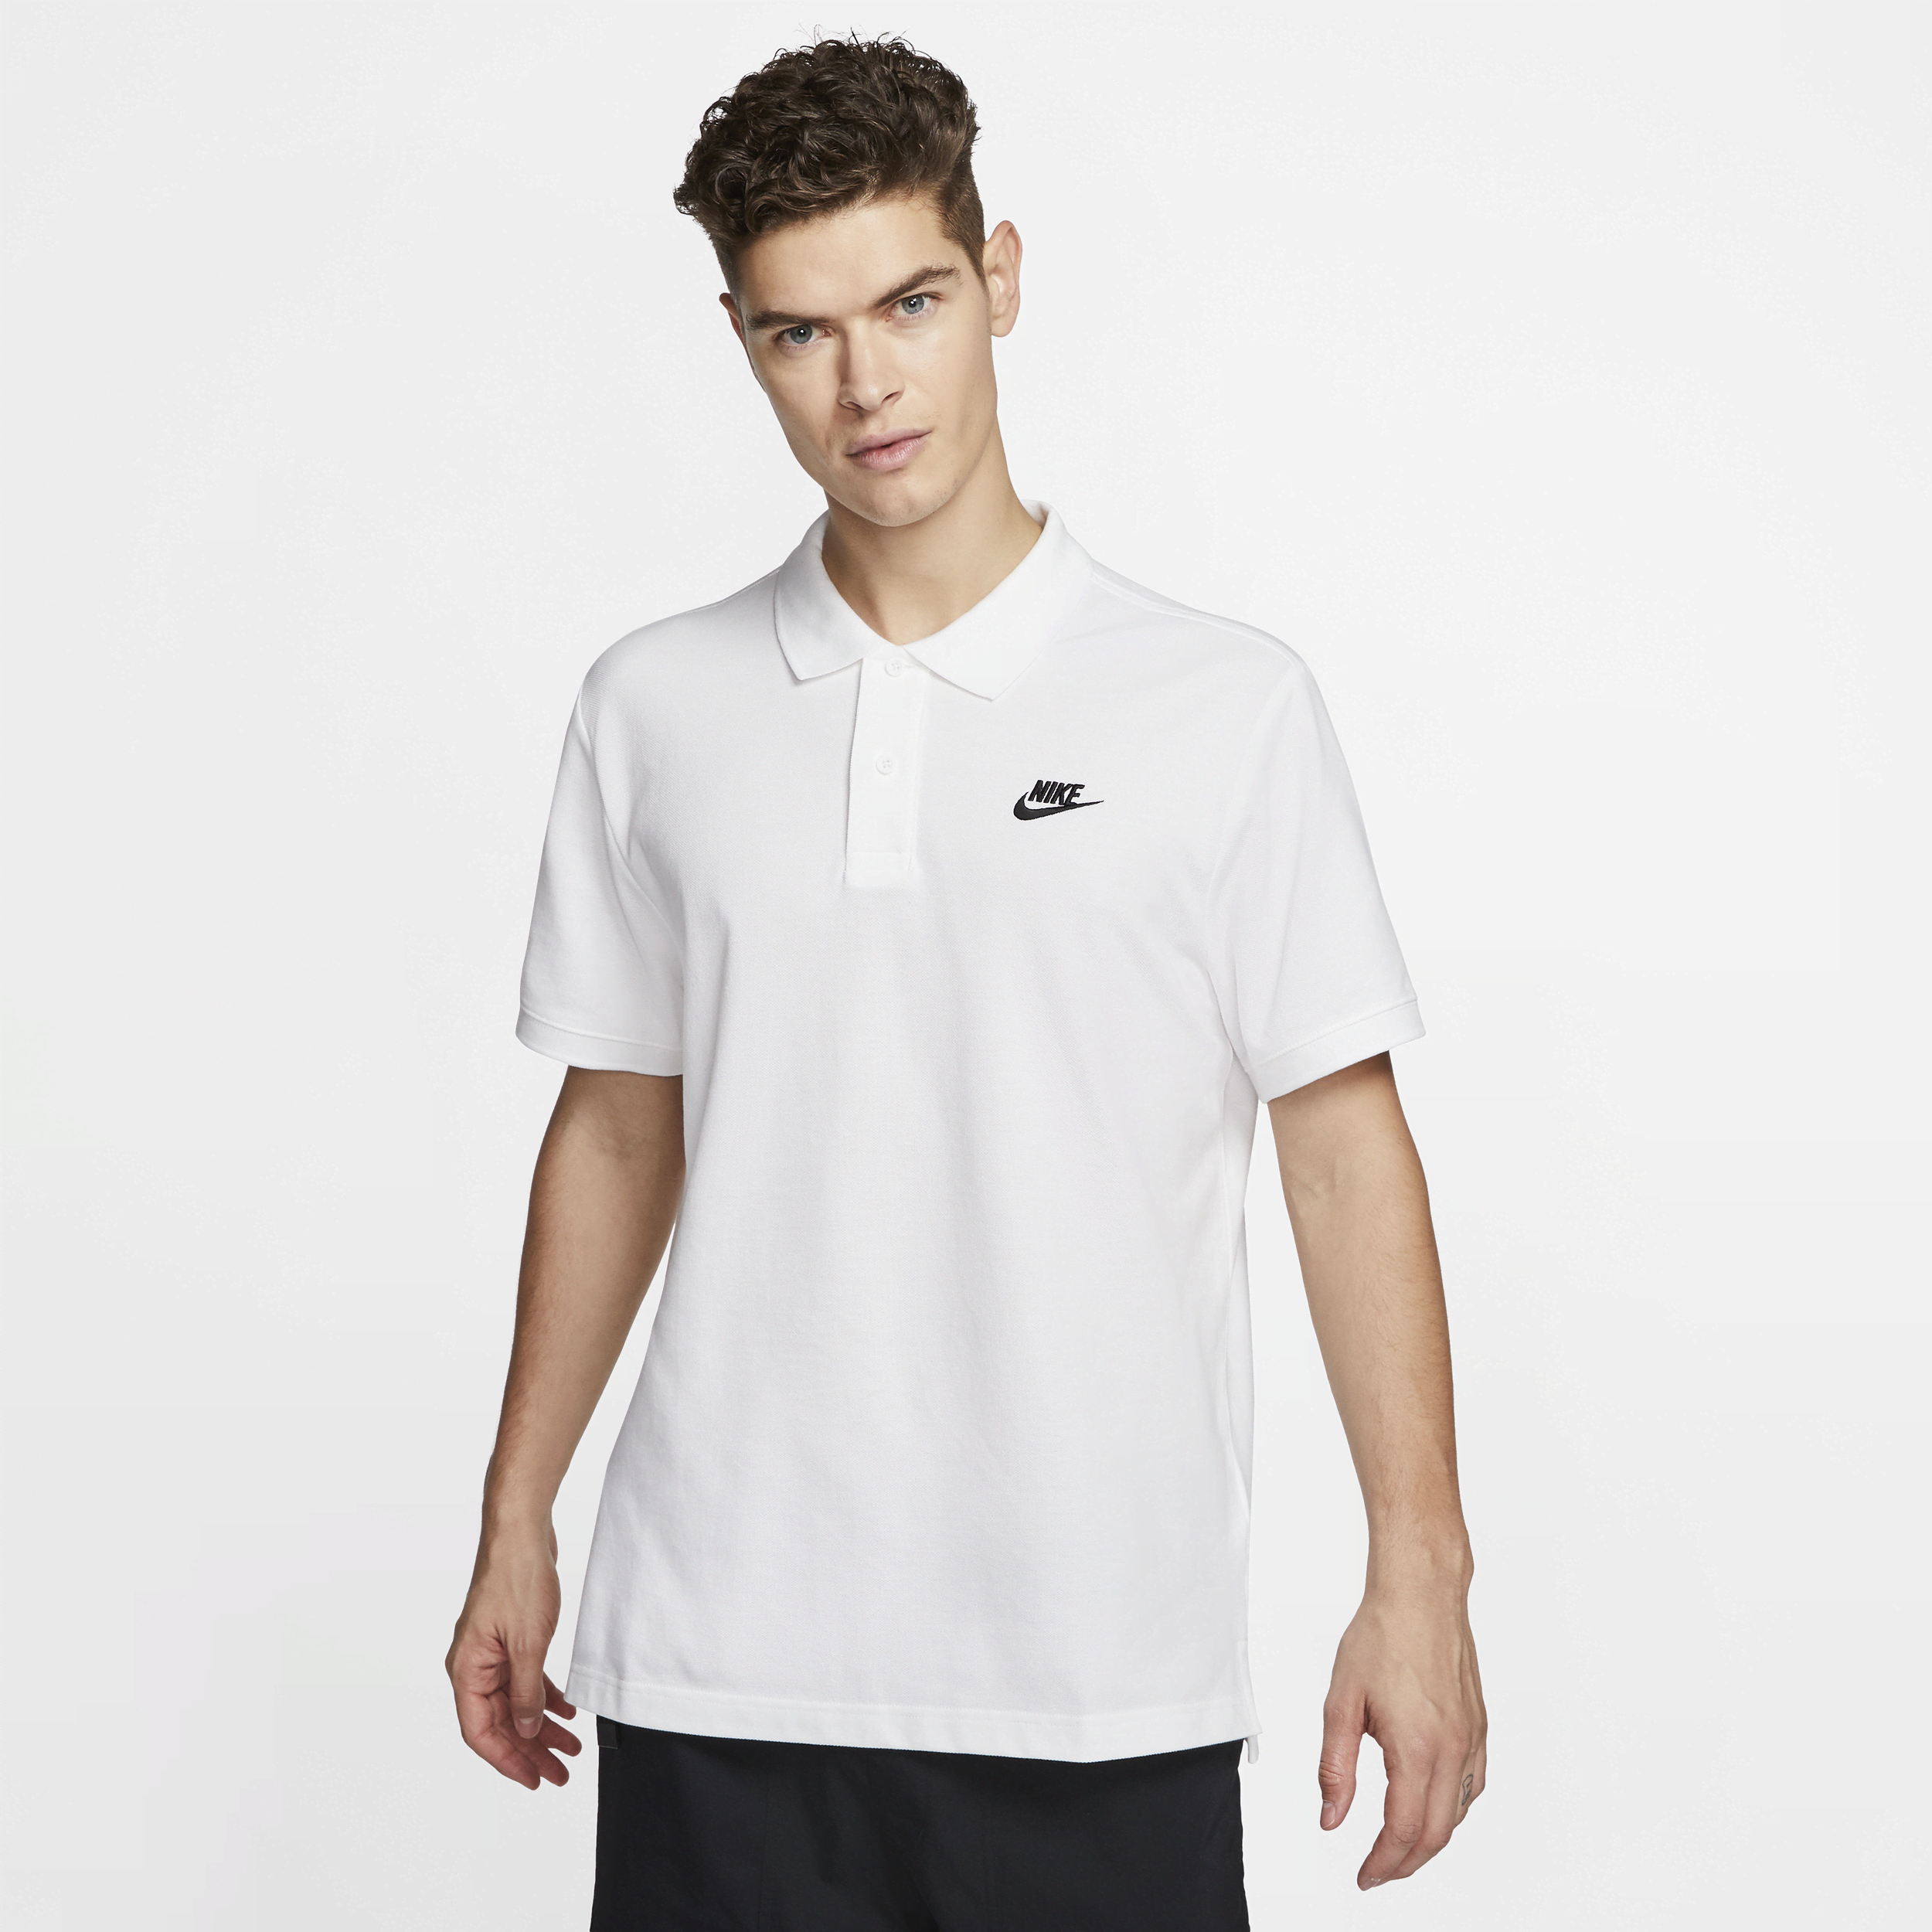 Polo Nike Sportswear - Uomo - Bianco